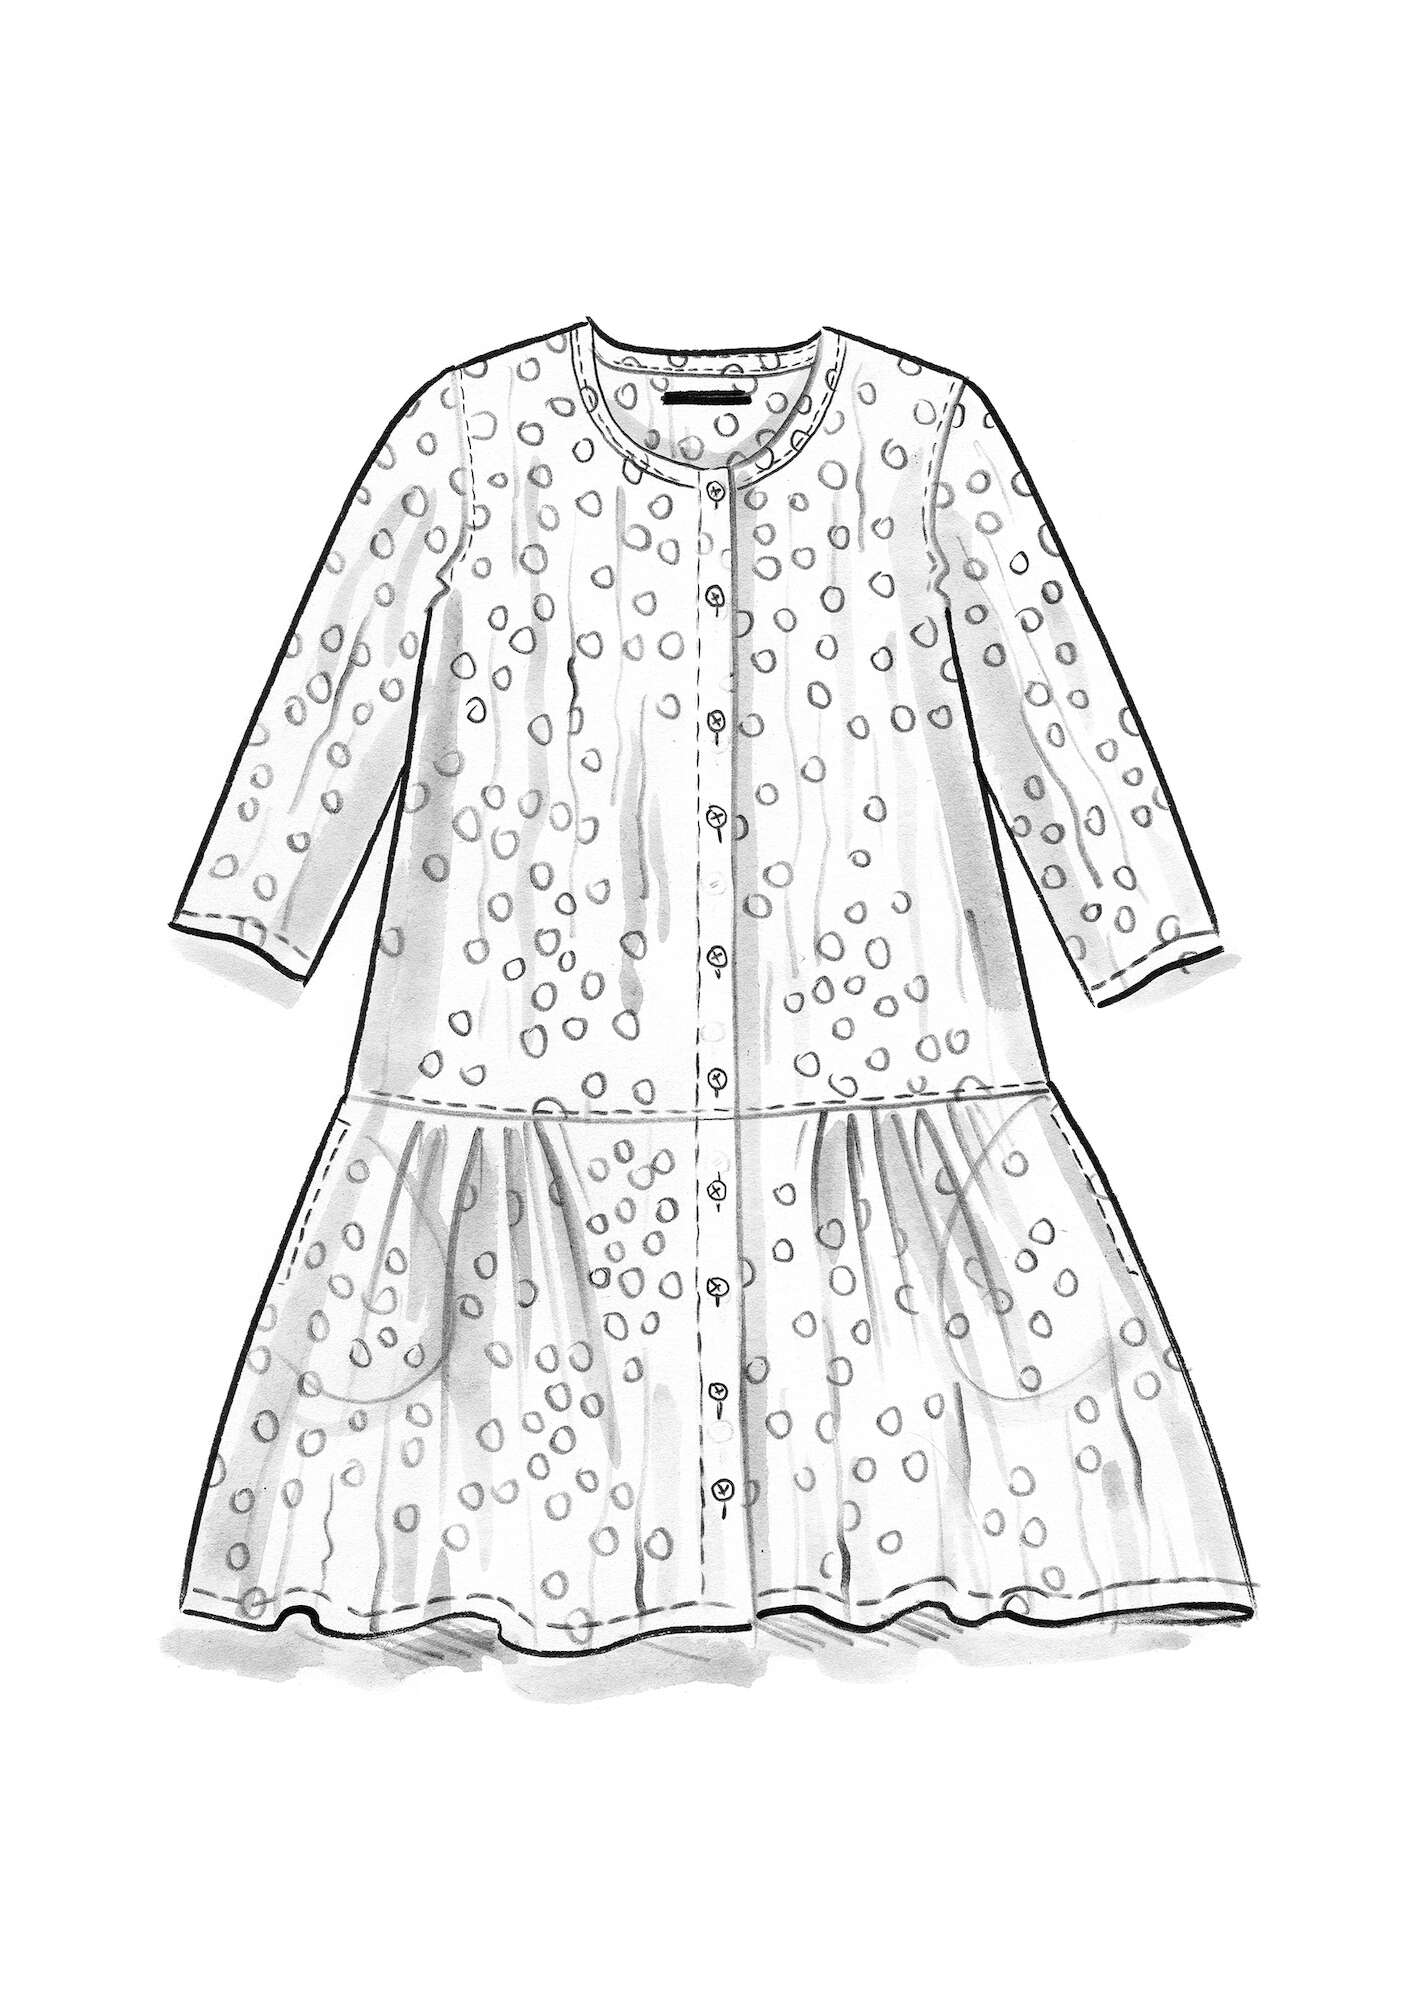 Vevd kjole «Alice» i økologisk bomull mørk hortensia/mønstret